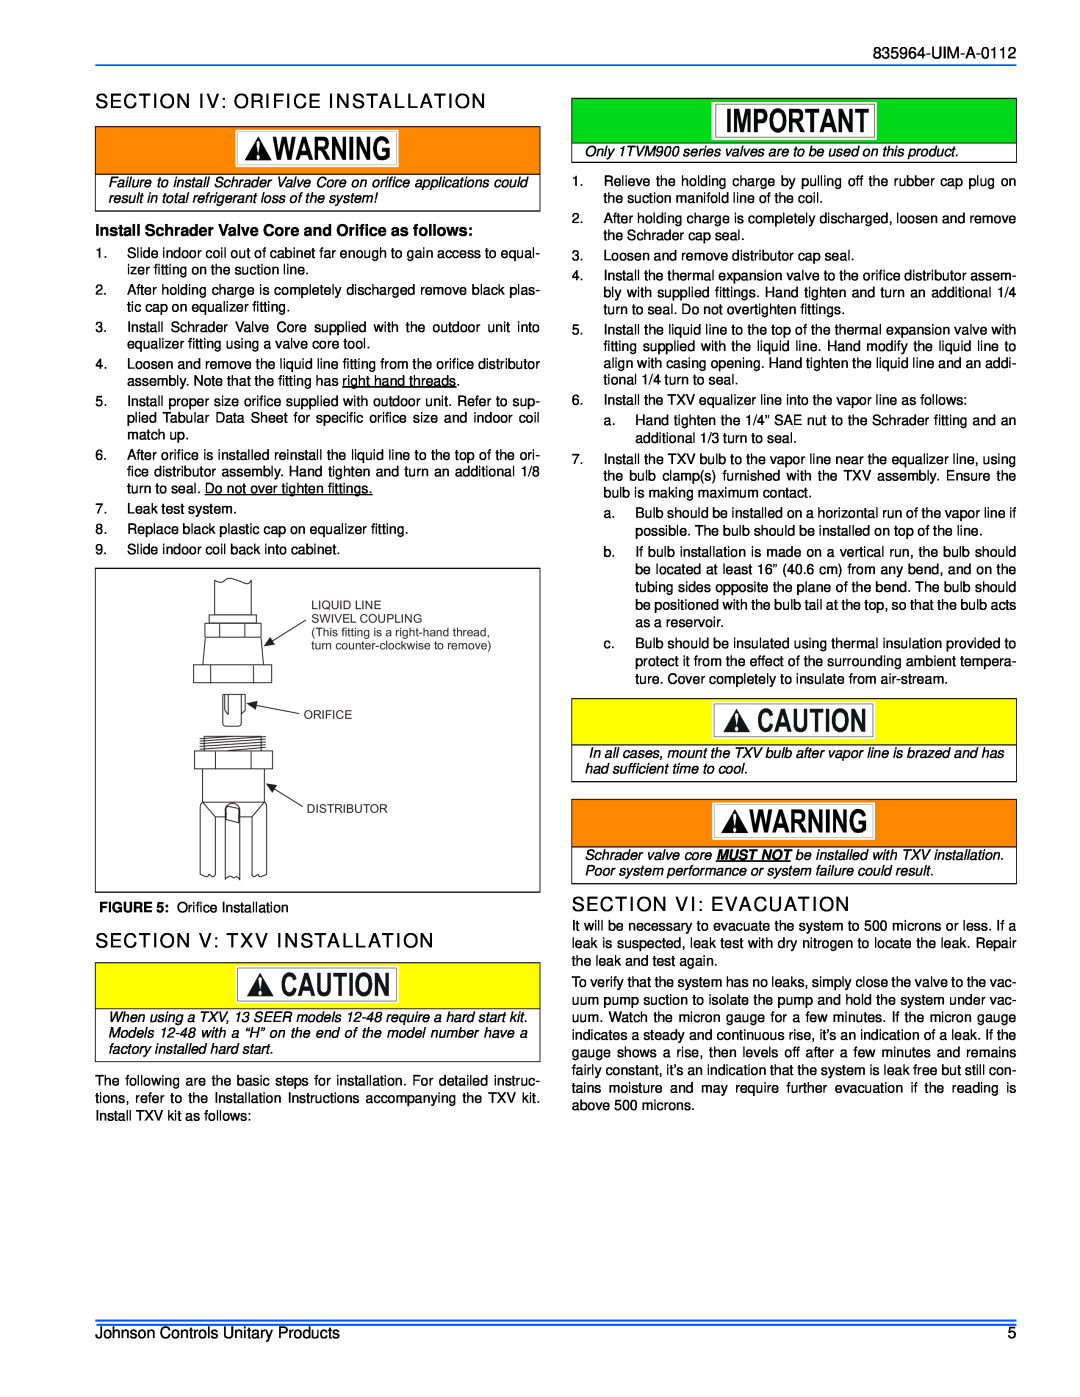 Johnson Controls R-410A Section Iv Orifice Installation, Section V Txv Installation, Section Vi Evacuation, UIM-A-0112 